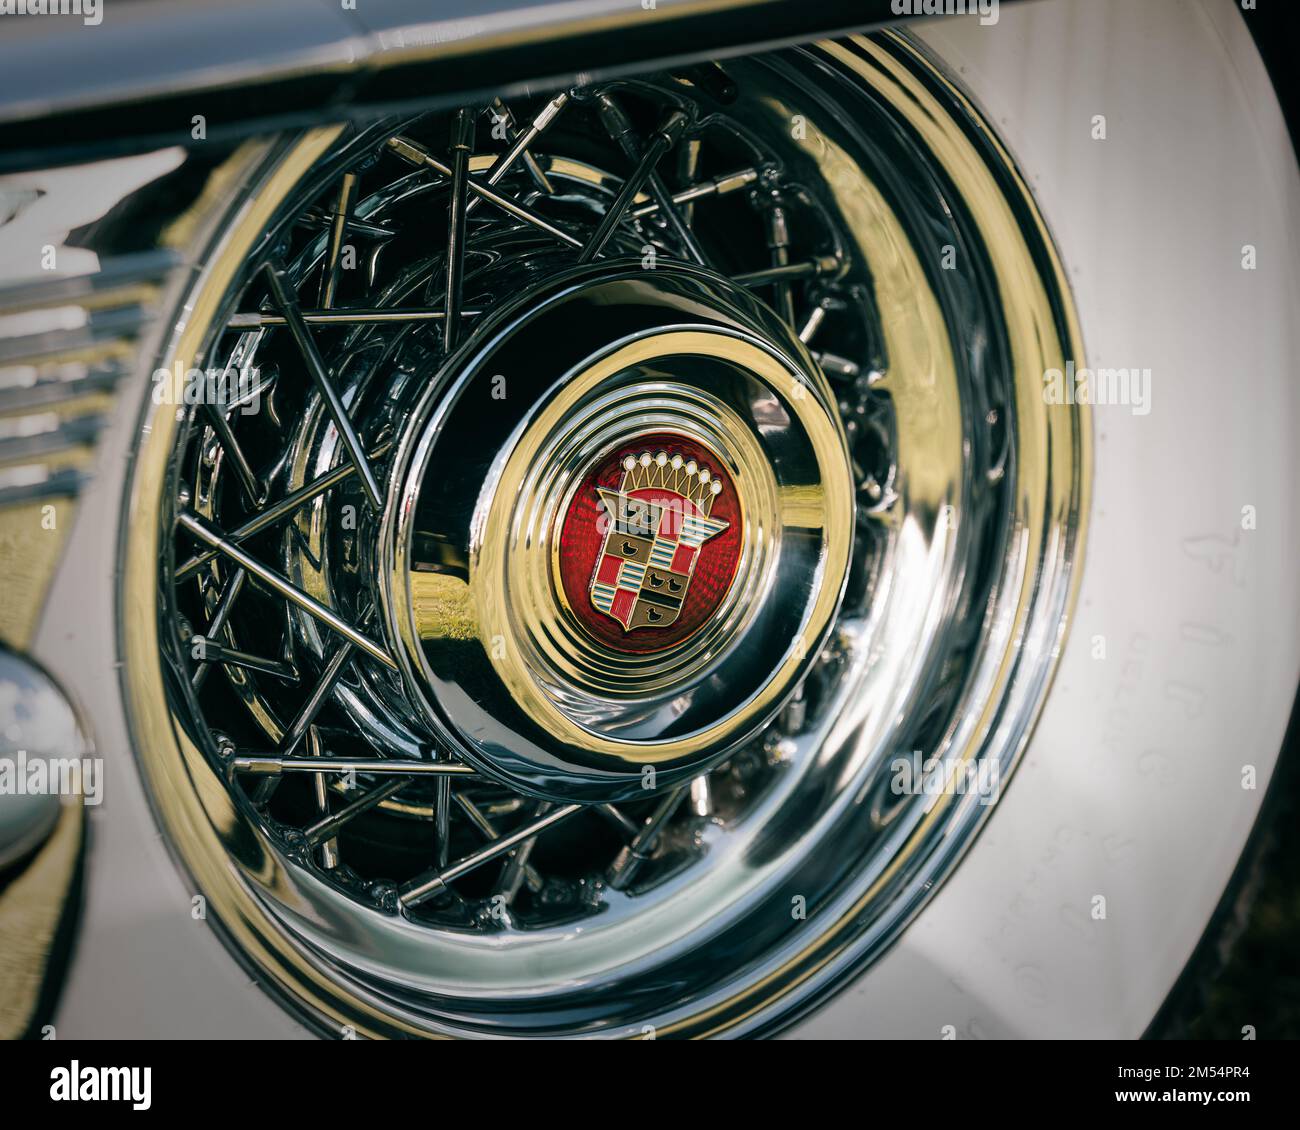 Primo piano di una ruota cromata di una Cadillac con un logo su di essa a Sunne, Svezia Foto Stock